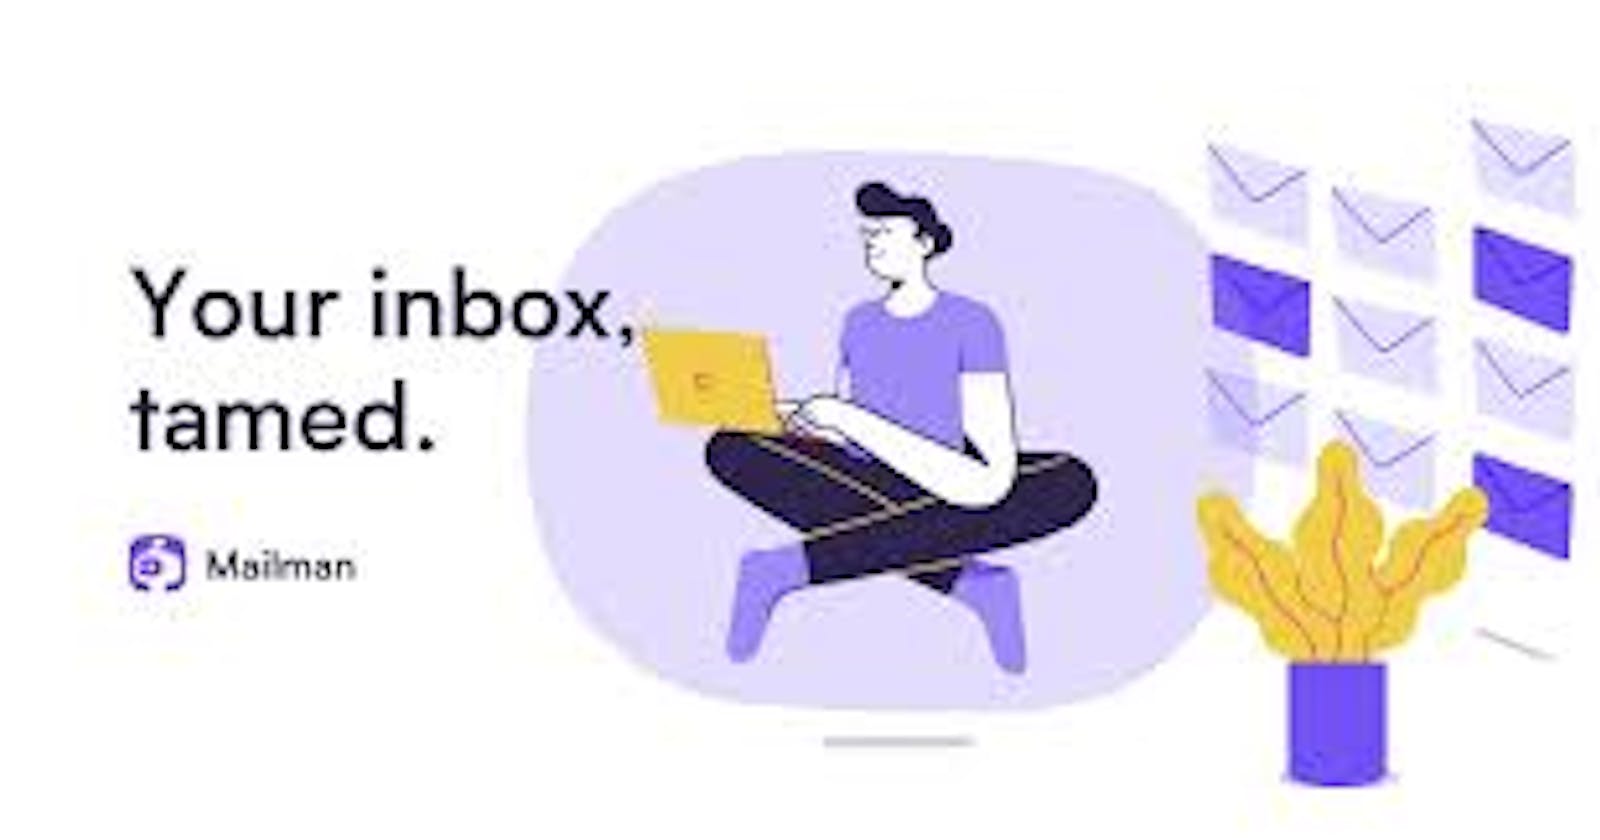 Gmail overload? Reach inbox zero with Mailman.